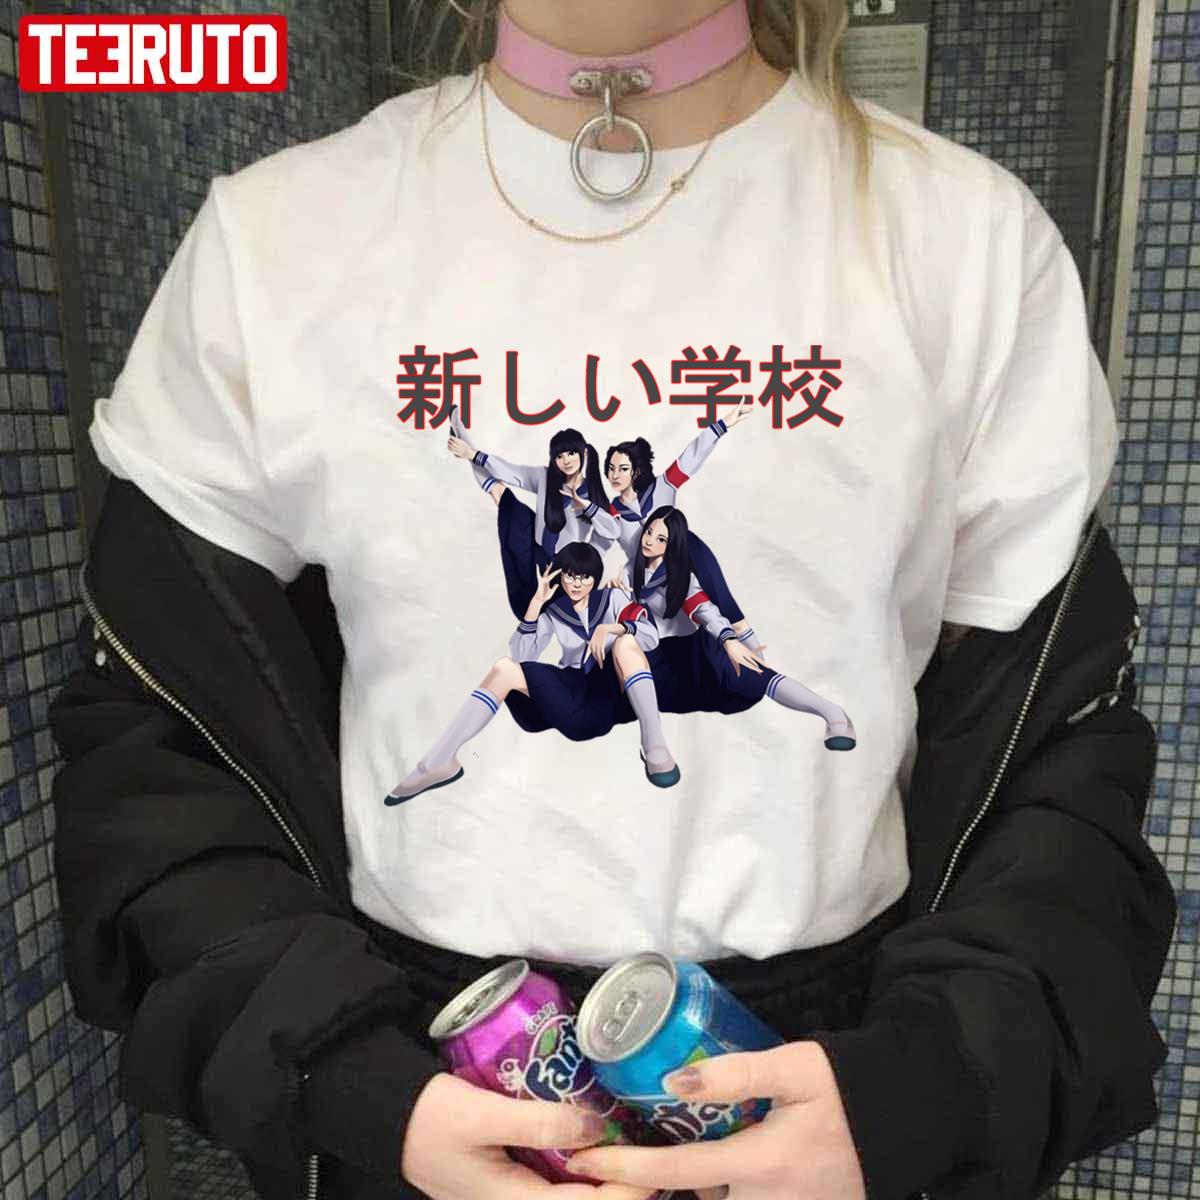 Gakko Weird Atarashii Gakko! Art Unisex T-shirt